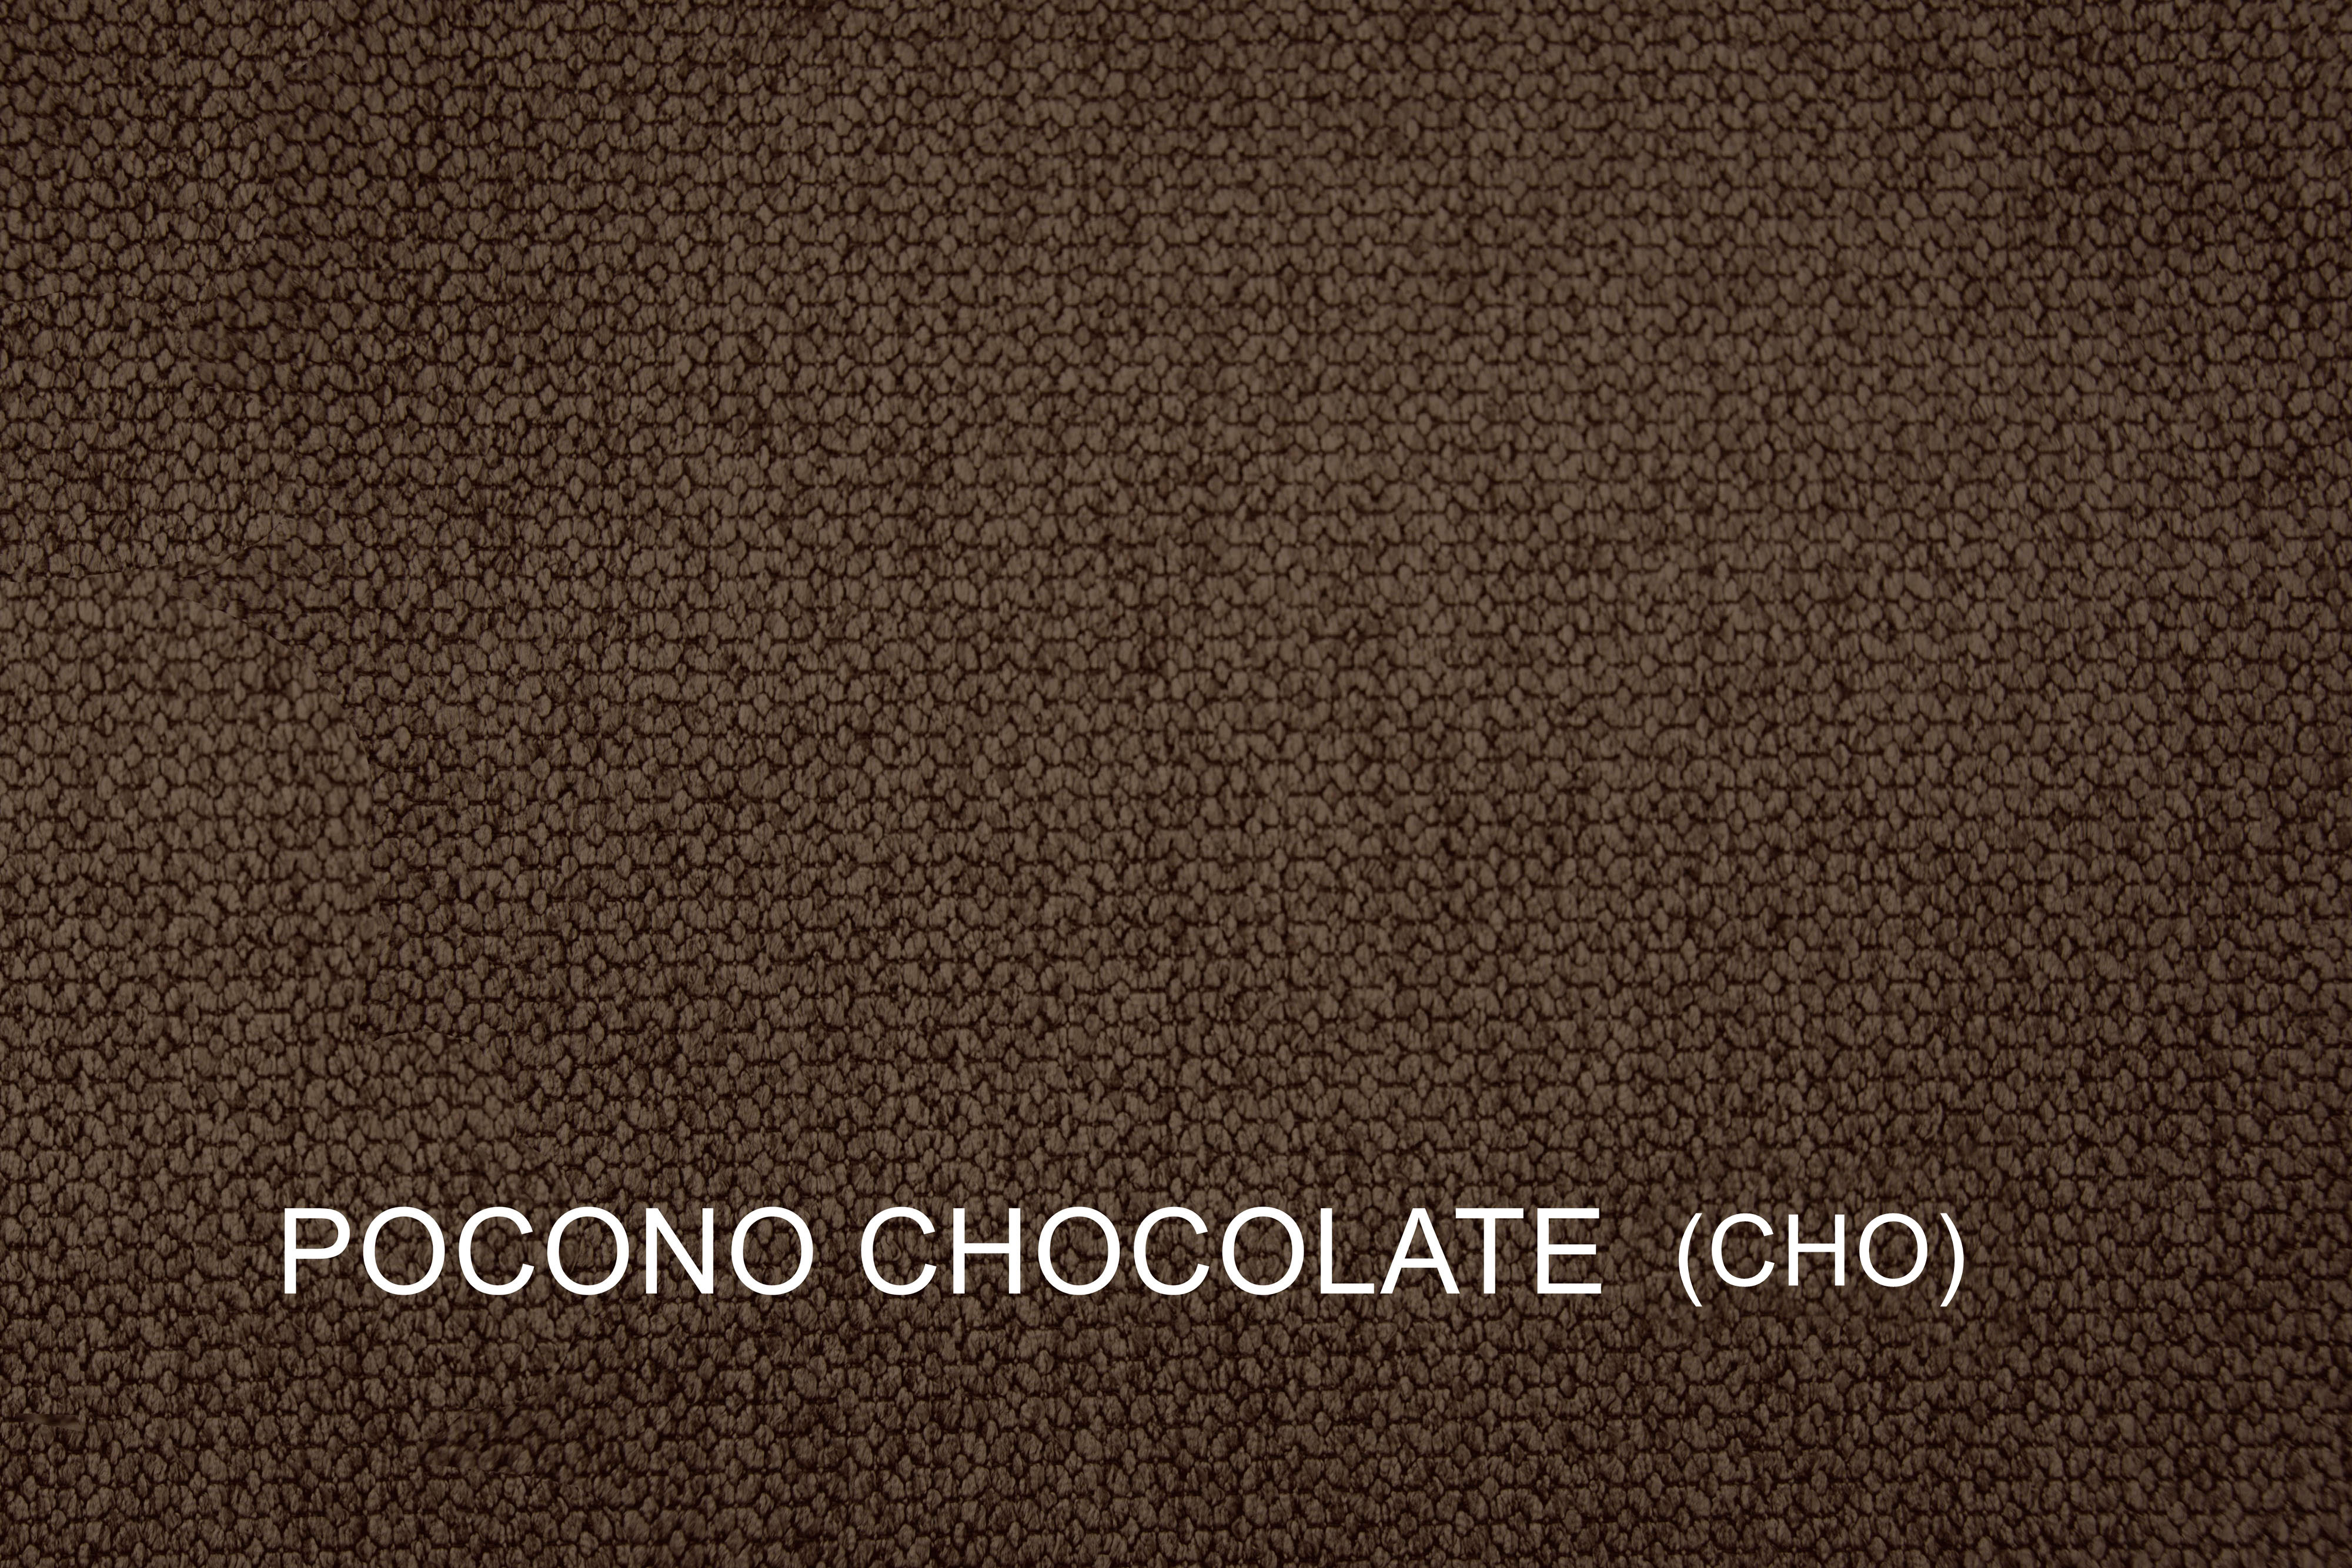 WMM2001-CHO-Pocono-Chocolate-SWATCH